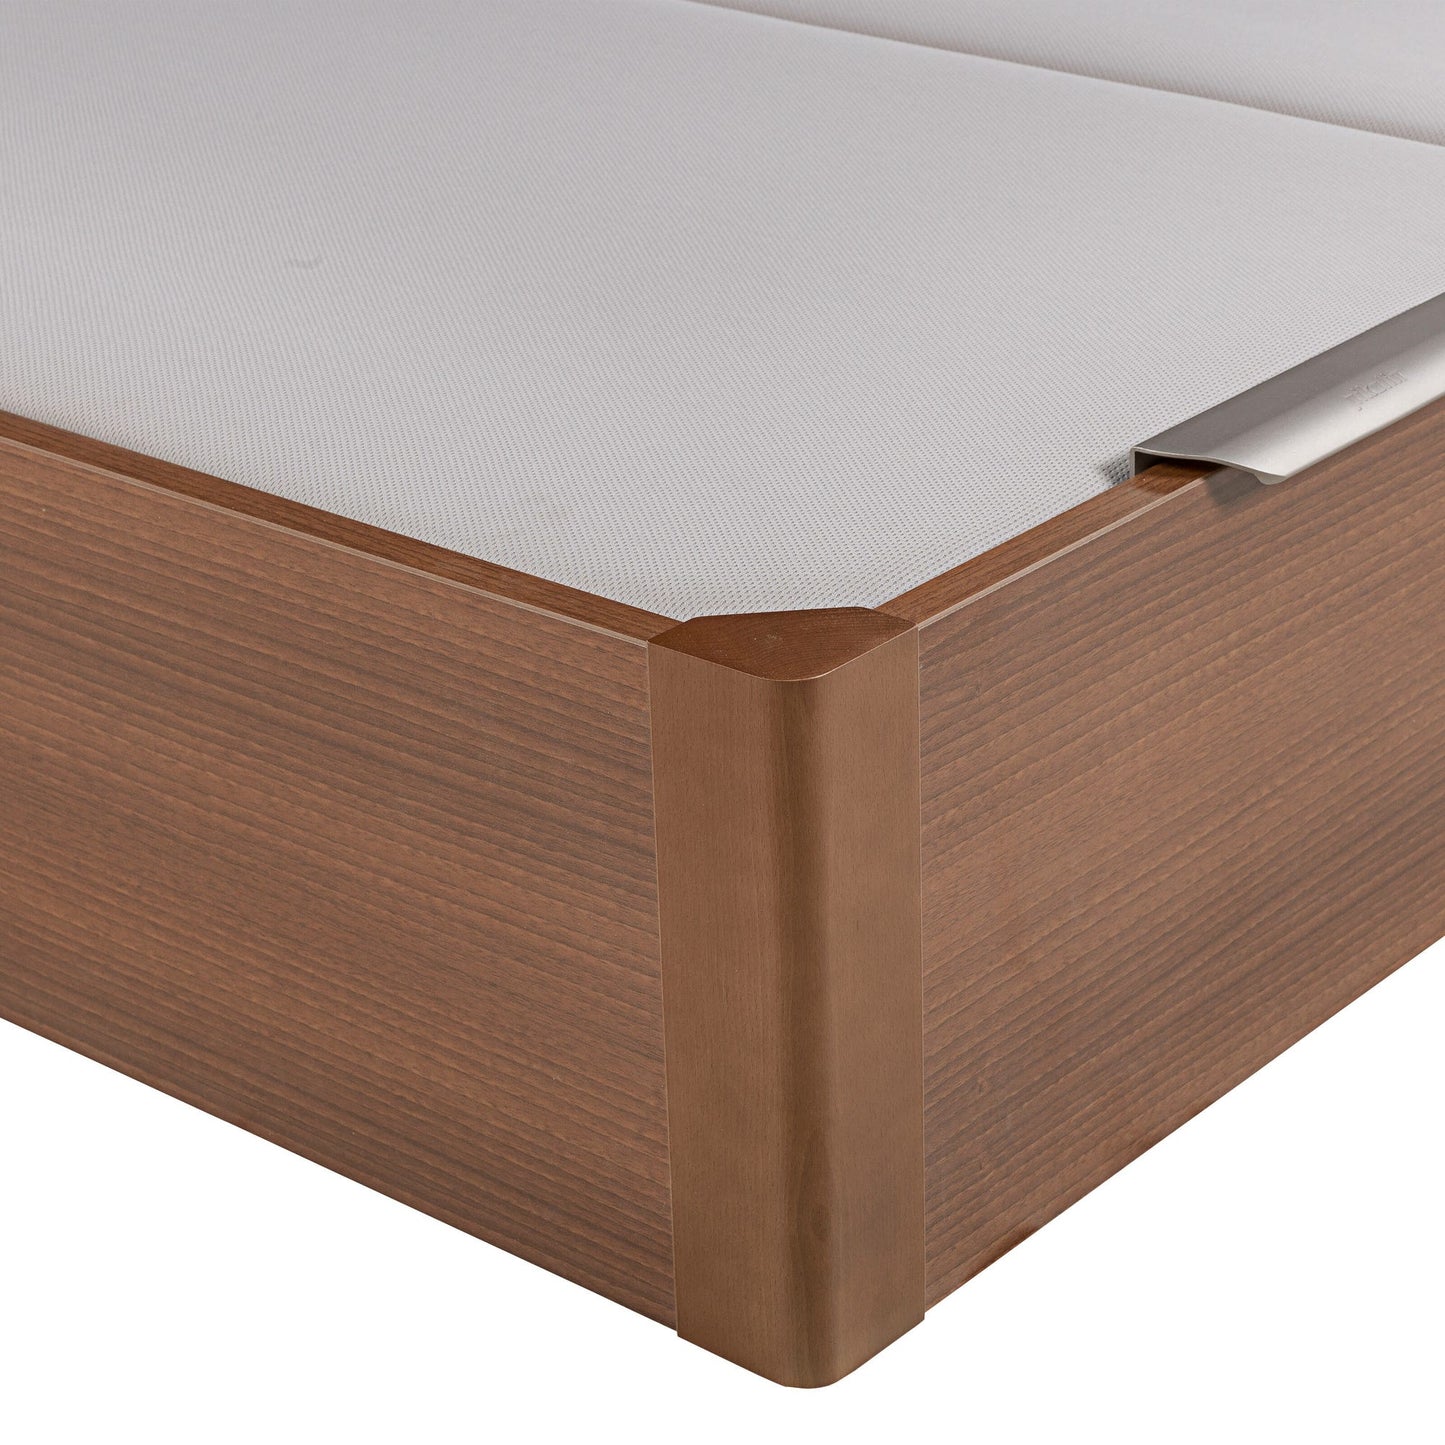 Canapé abatible de madera de tapa doble de color cerezo - DESIGN - 160x190